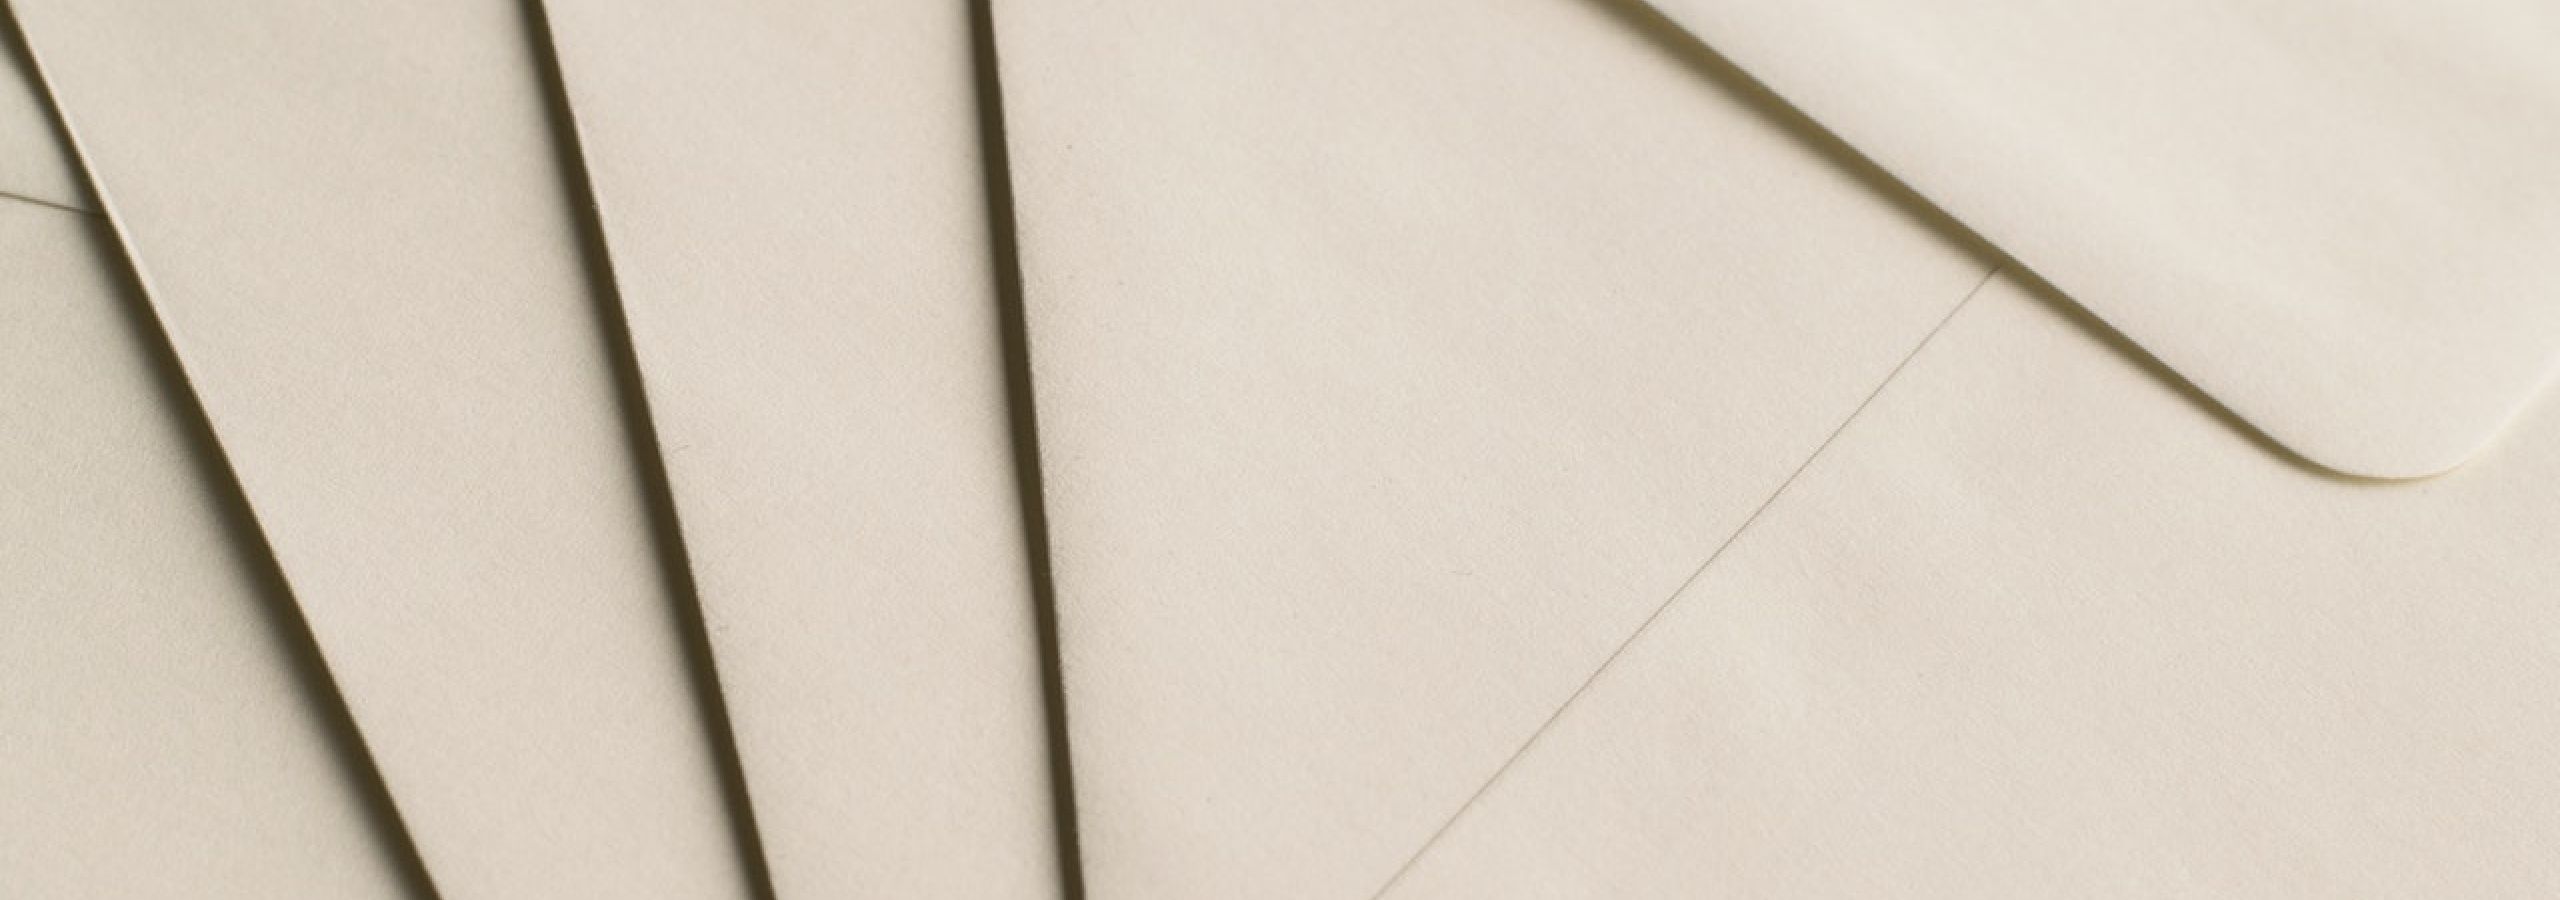 letters in envelopes